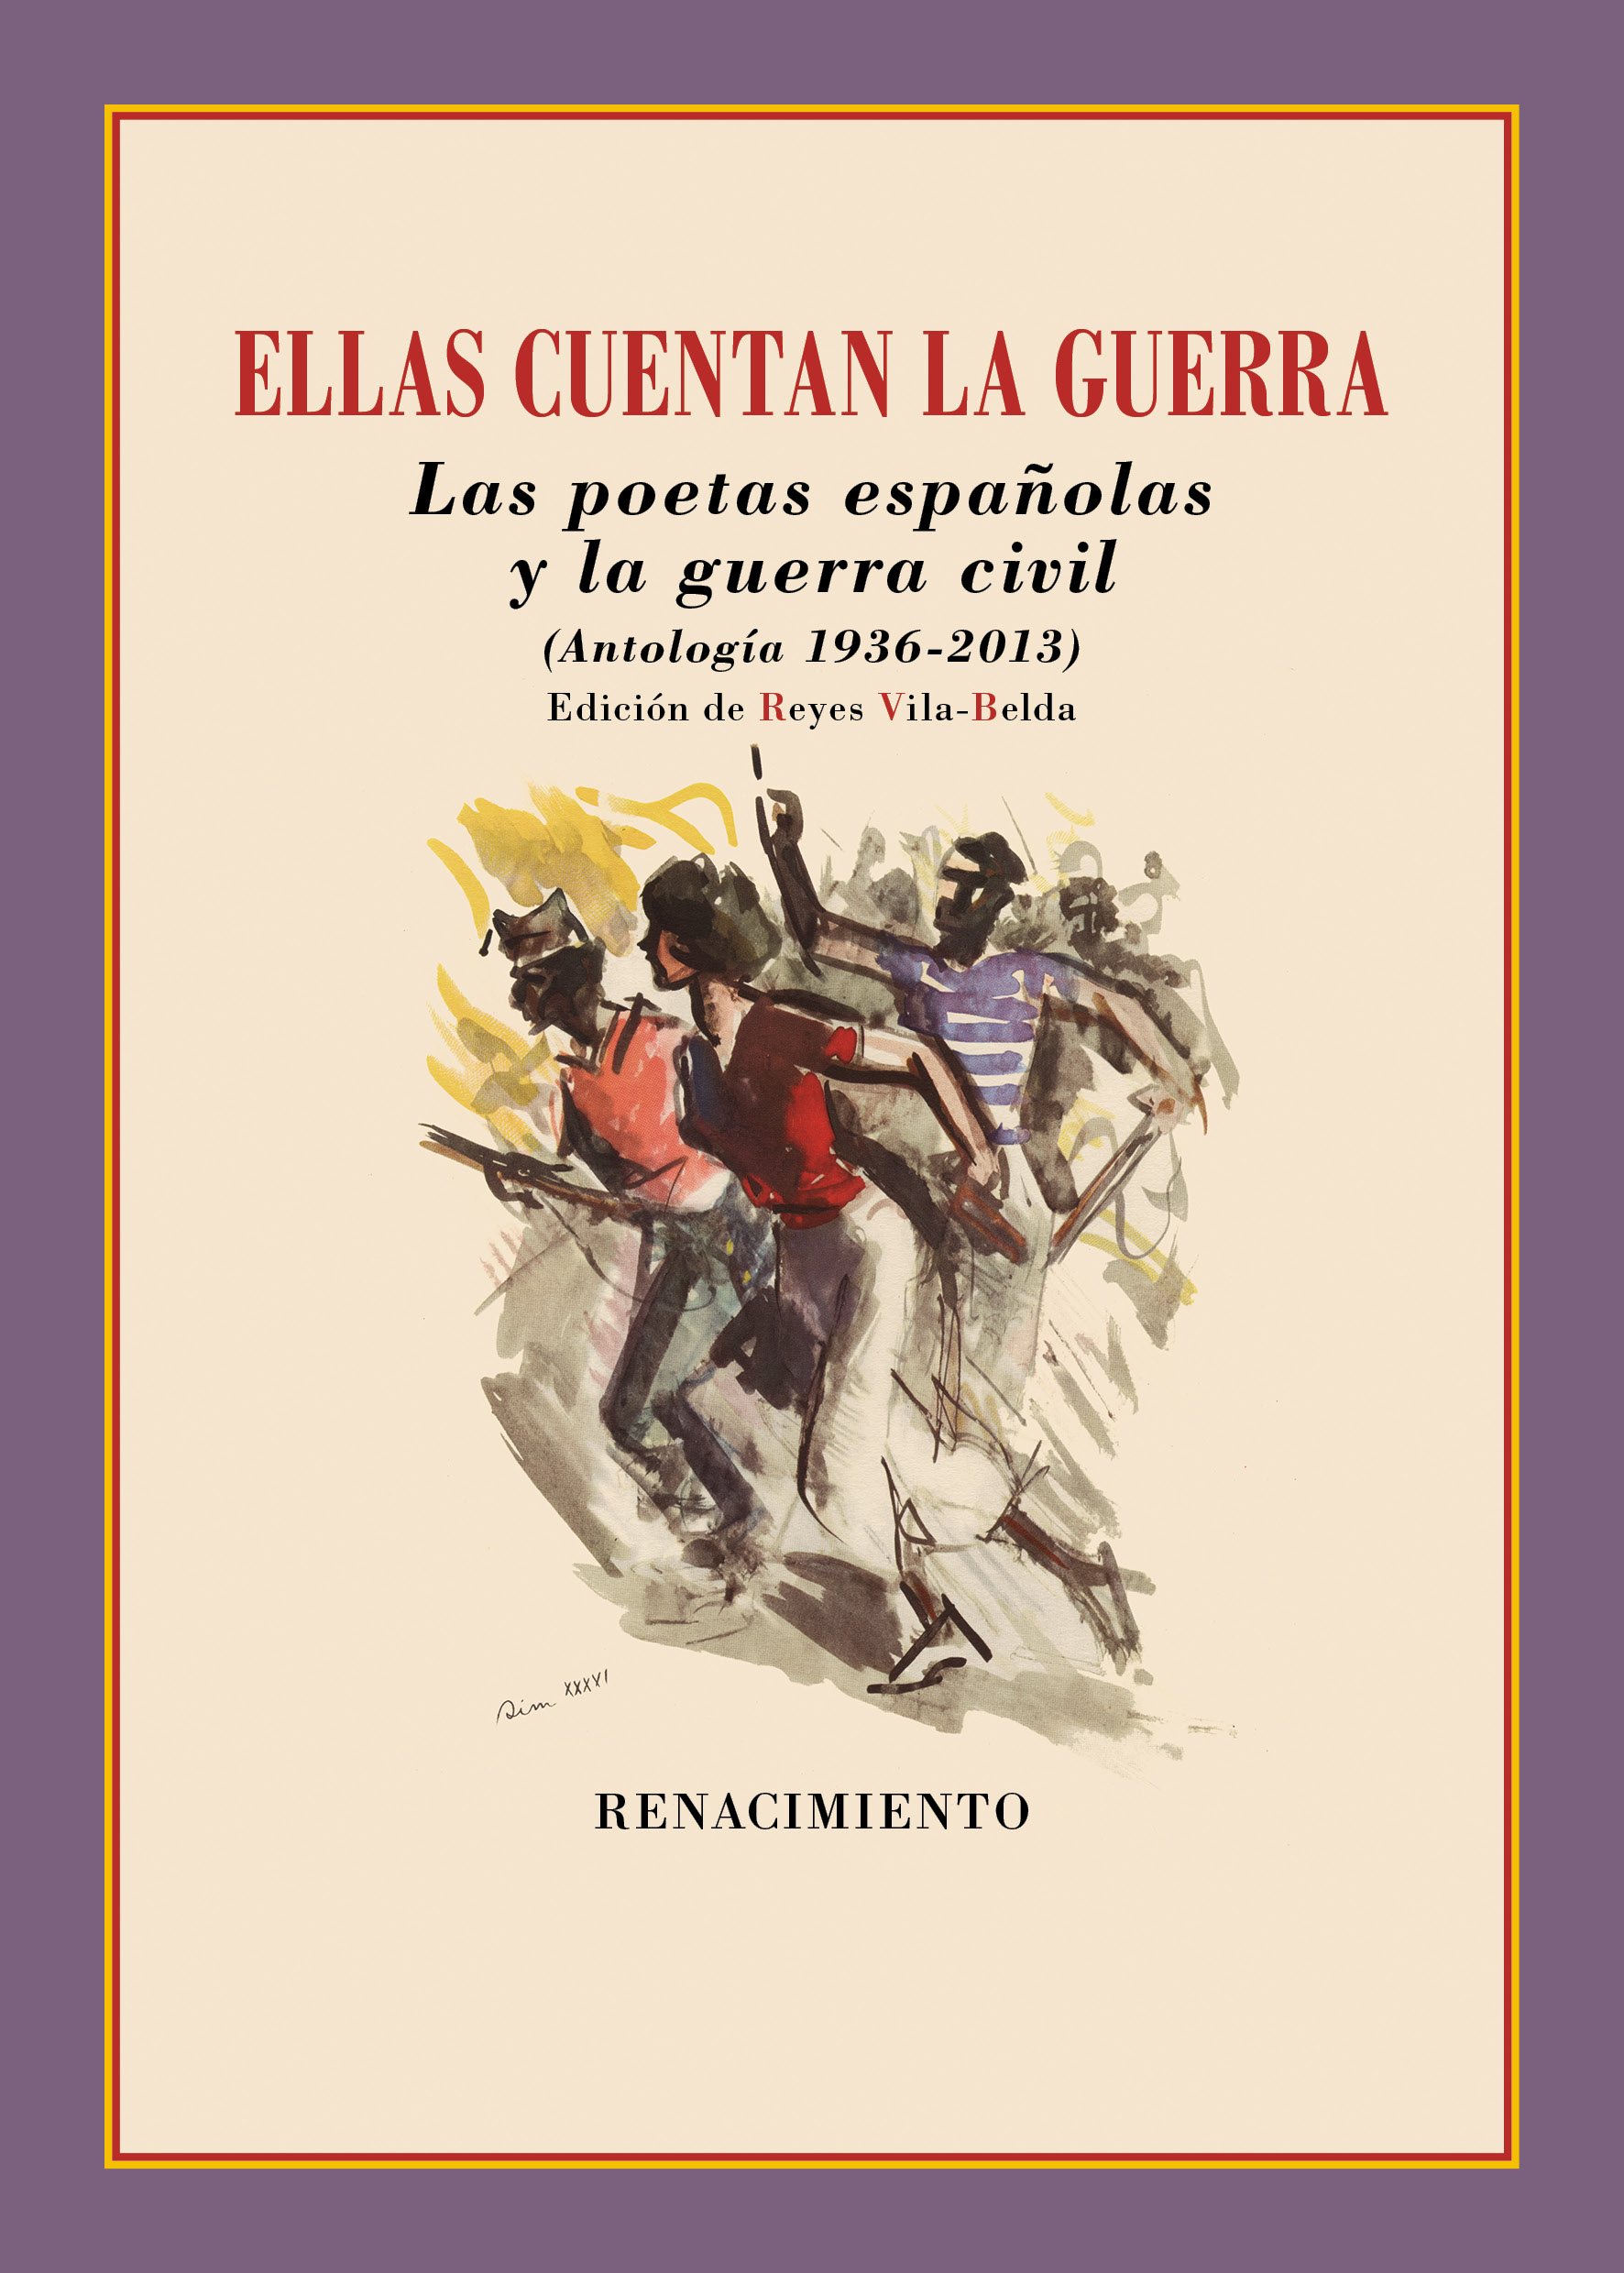 Poetas españolas y la guerra civil